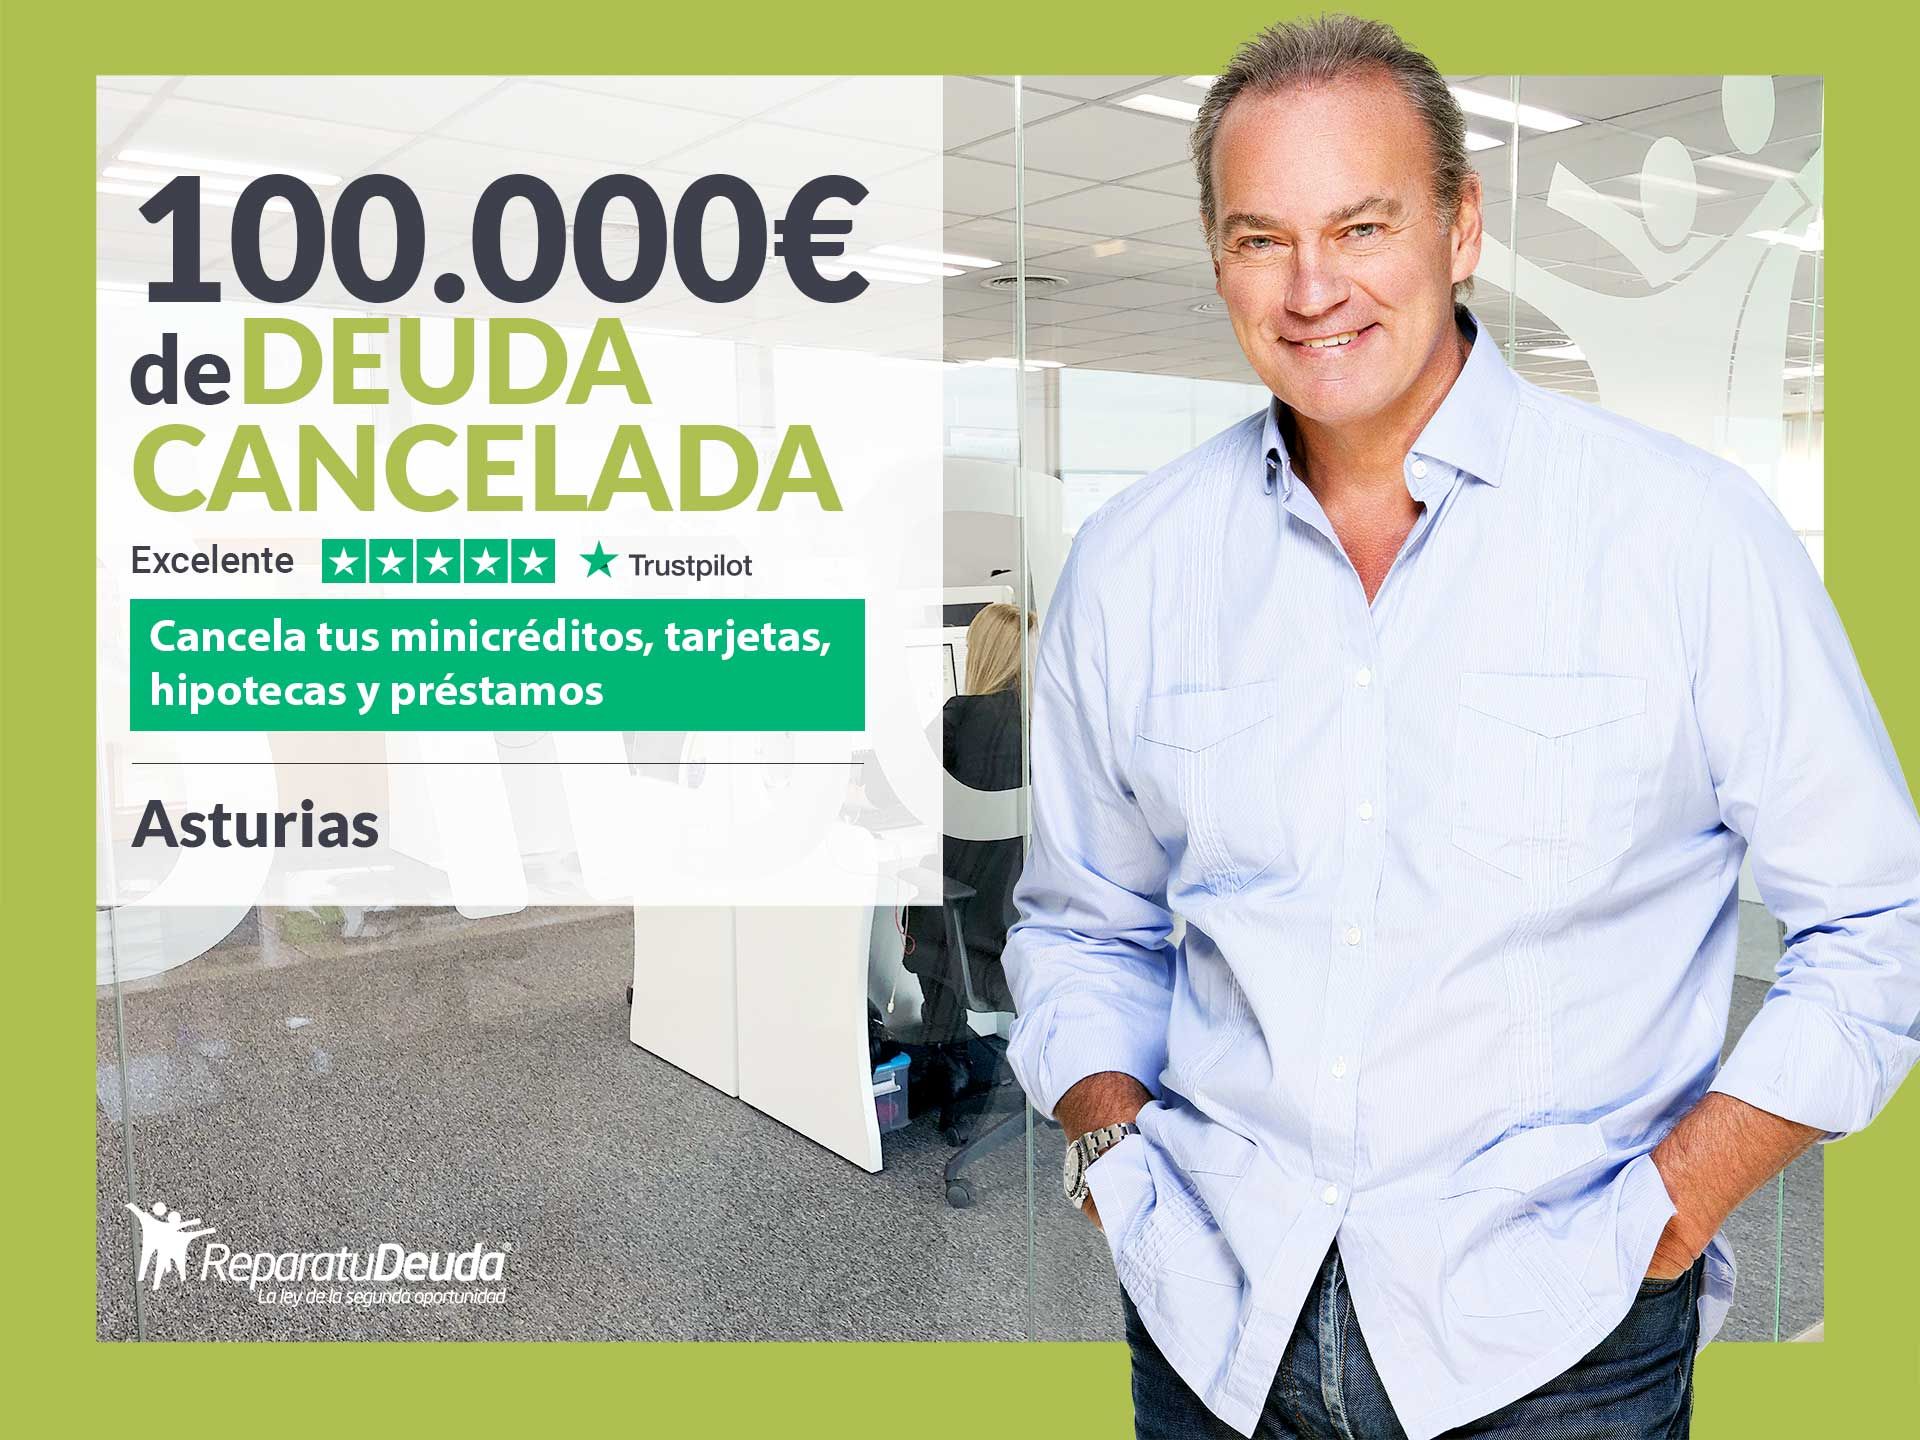 Repara tu Deuda Abogados cancela 100.000? en Oviedo (Asturias) gracias a la Ley de Segunda Oportunidad